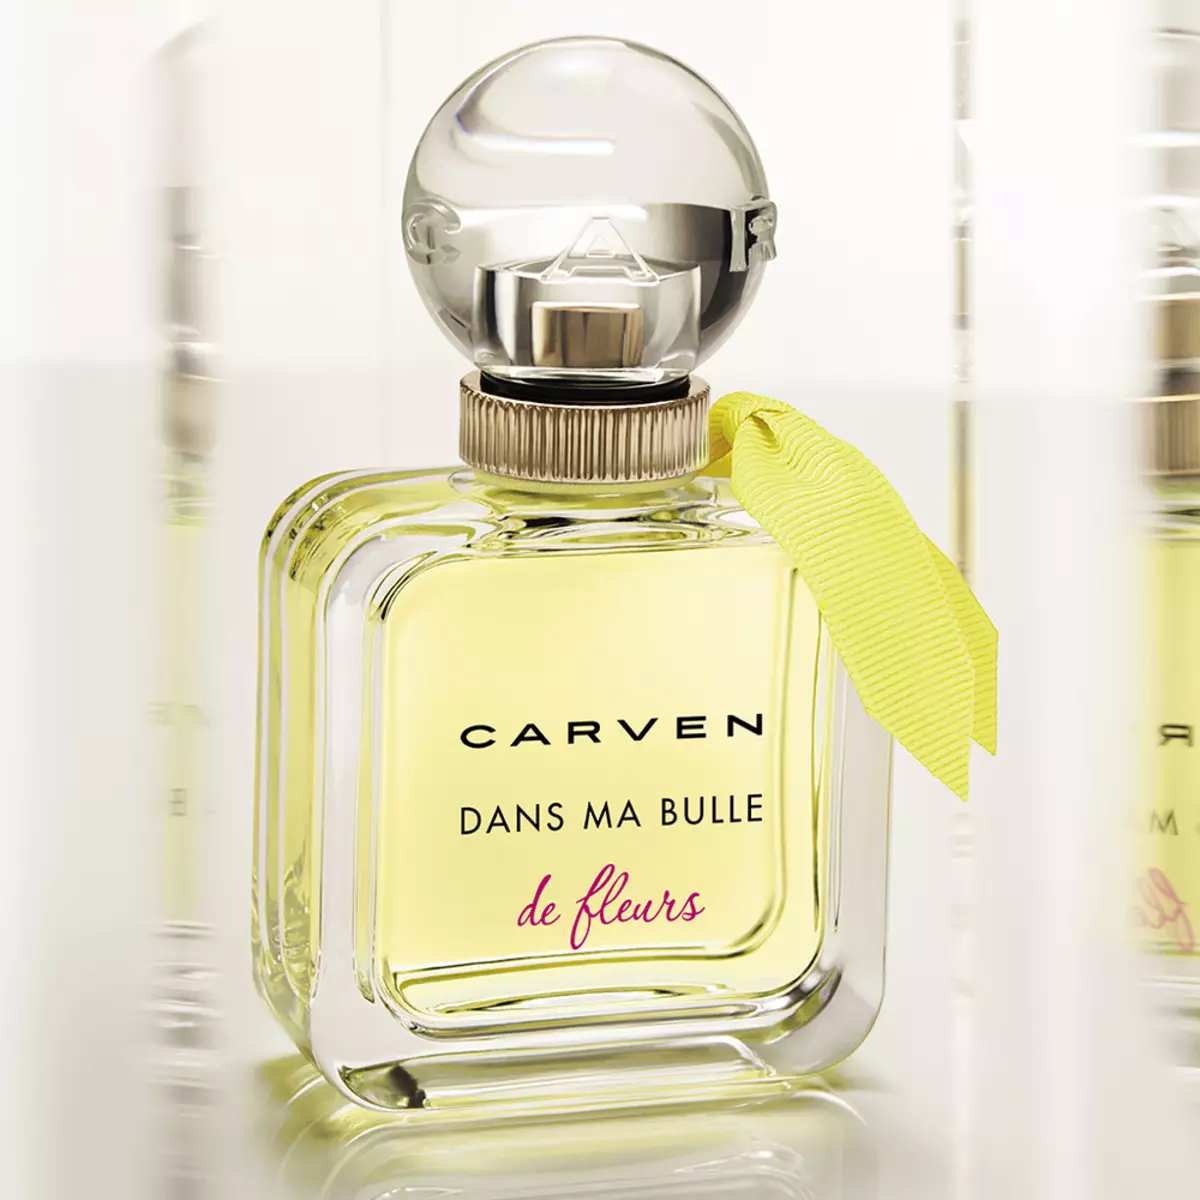 น้ำหอม Carven: น้ำหอมผู้หญิง Le Parfum, L'Eau De Toilette Toilette และ Dans Ma Bulle, น้ำหอมสำหรับผู้ชาย 25267_9